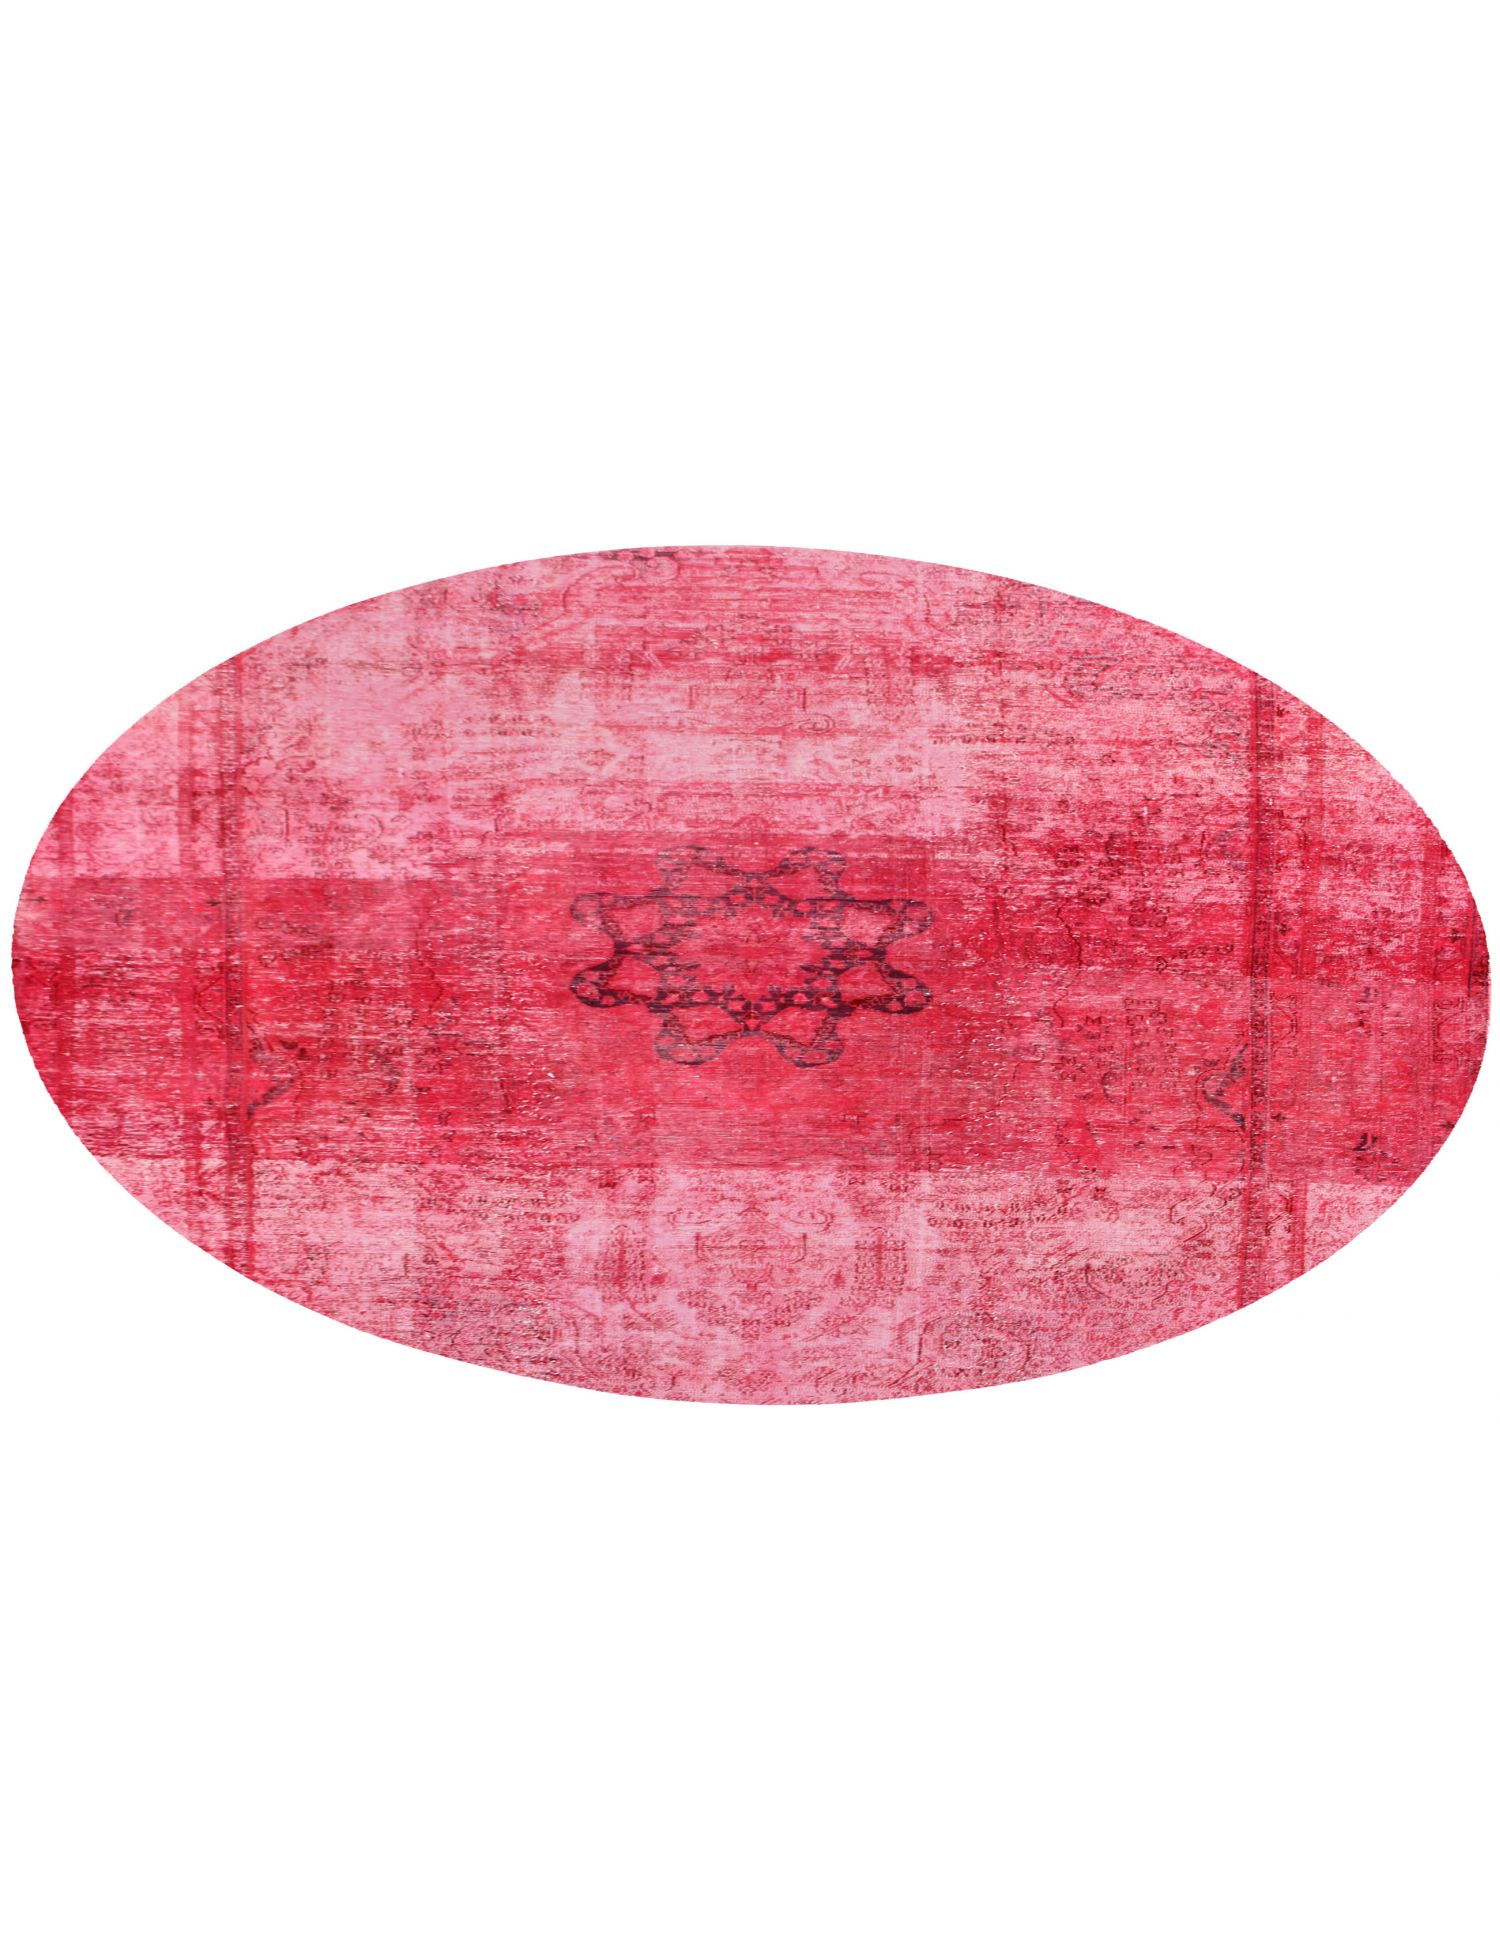 Persisk Vintagetæppe  rød <br/>290 x 290 cm